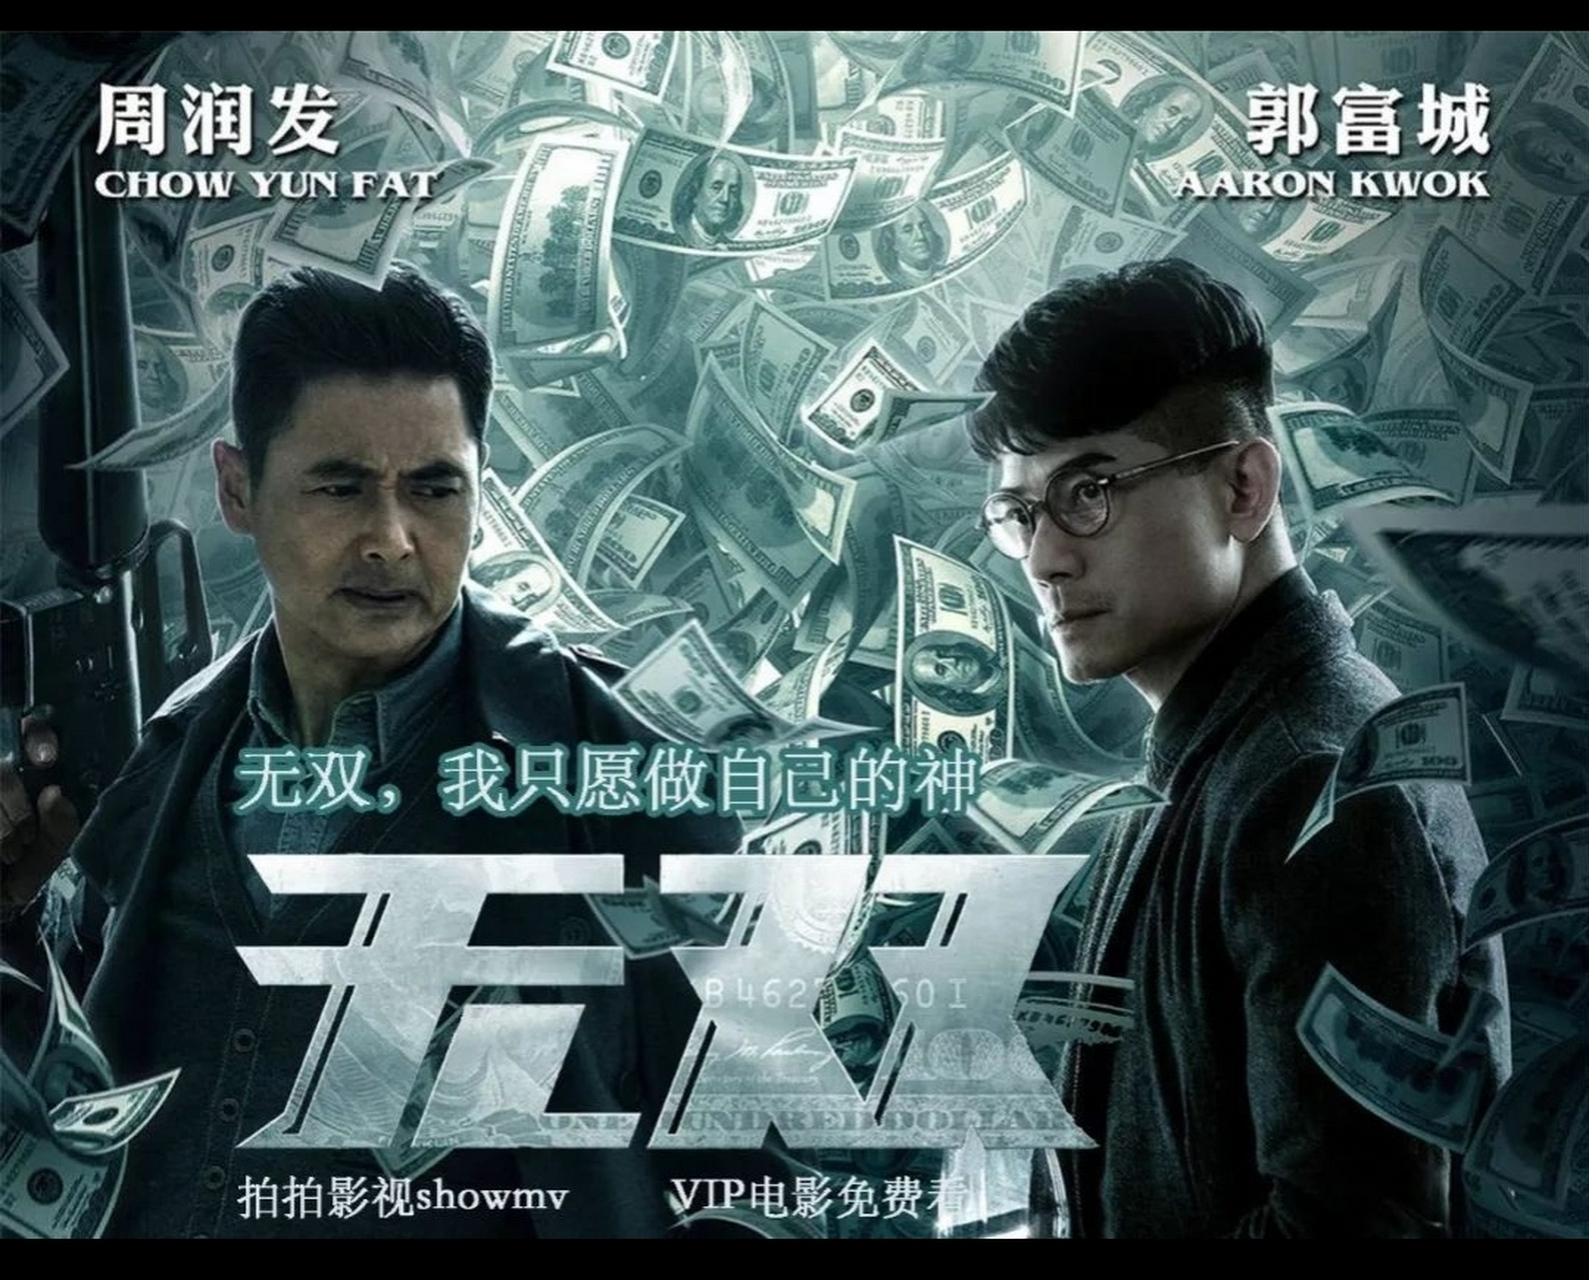 电影推荐《无双》是一部2018年上映的香港警匪动作片,由叶伟信执导